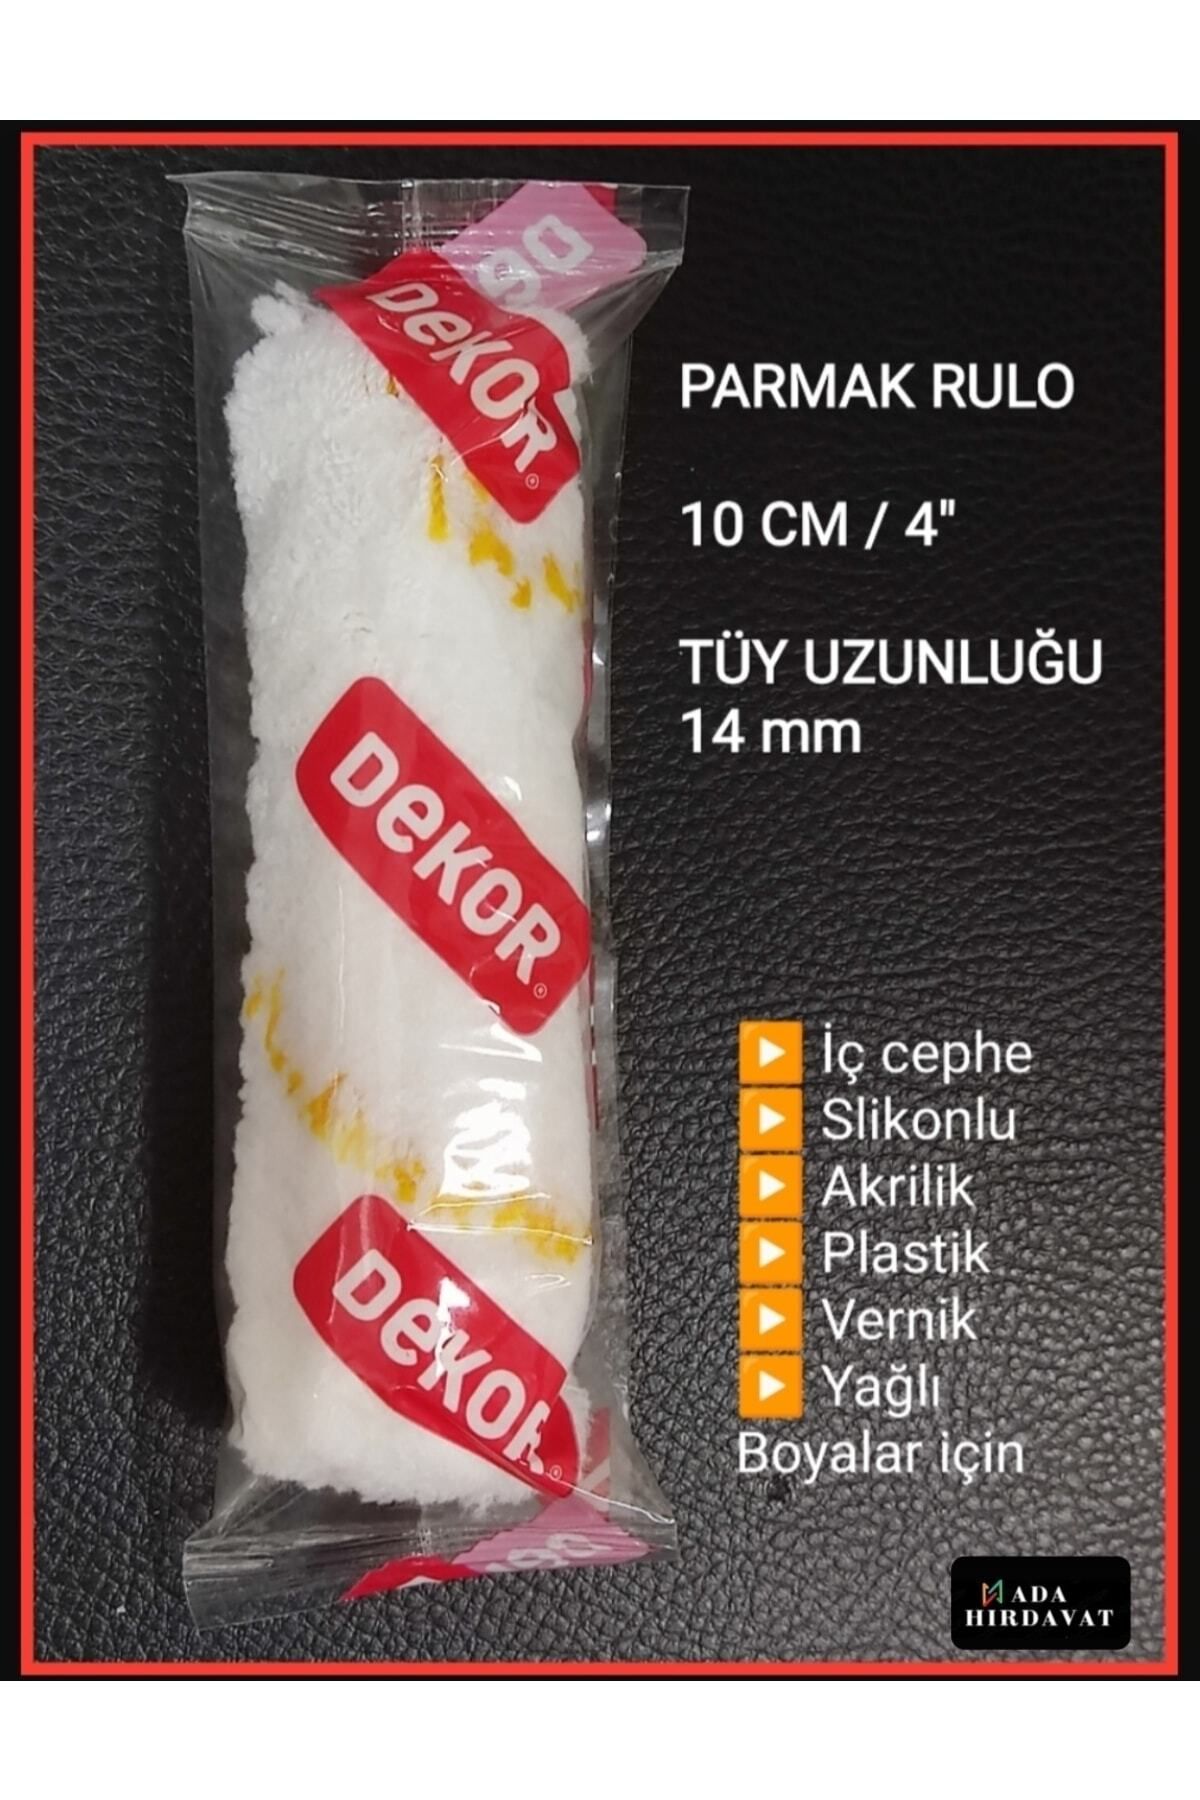 Dekor Parmak Rulo Mını Roler Yedek Uc / 10cm / Hobi Boya Badana Rulo Fırça / 2 Adet